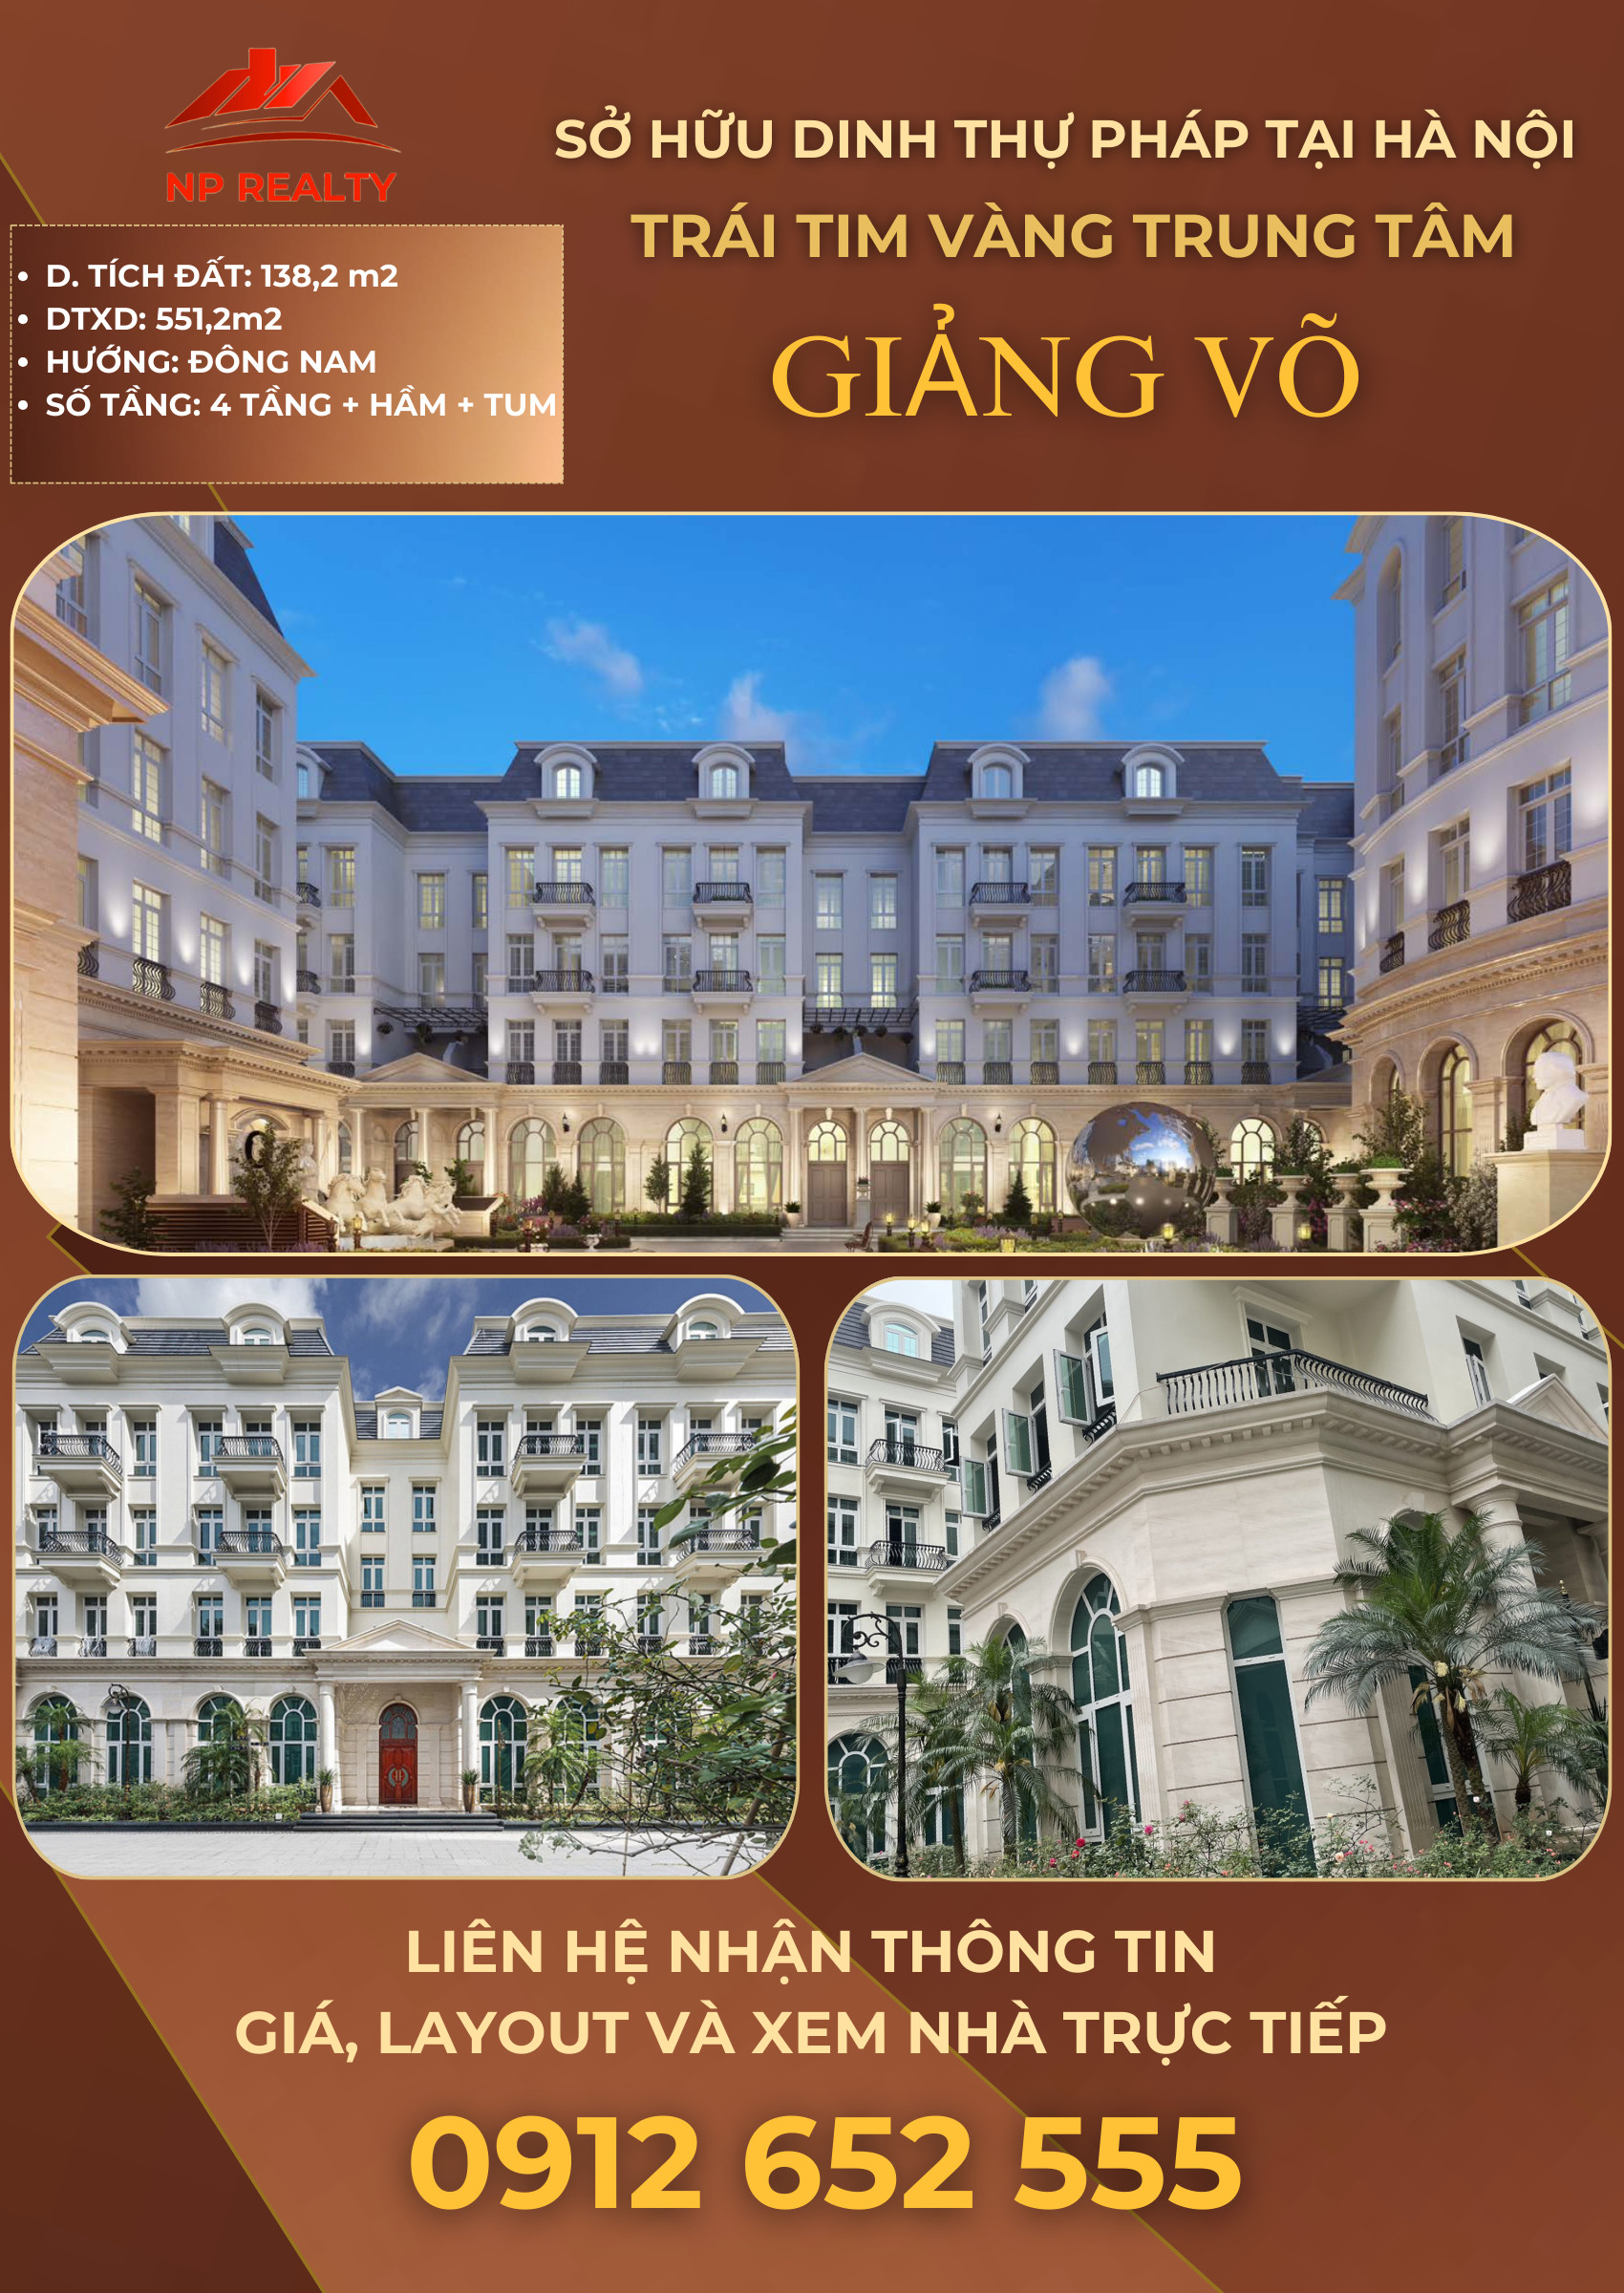 Chính chủ cần bán dinh thự Grandeur Palace 210m2 - 138B phố Giảng Võ – Trung tâm Hà Nội. - Ảnh 1